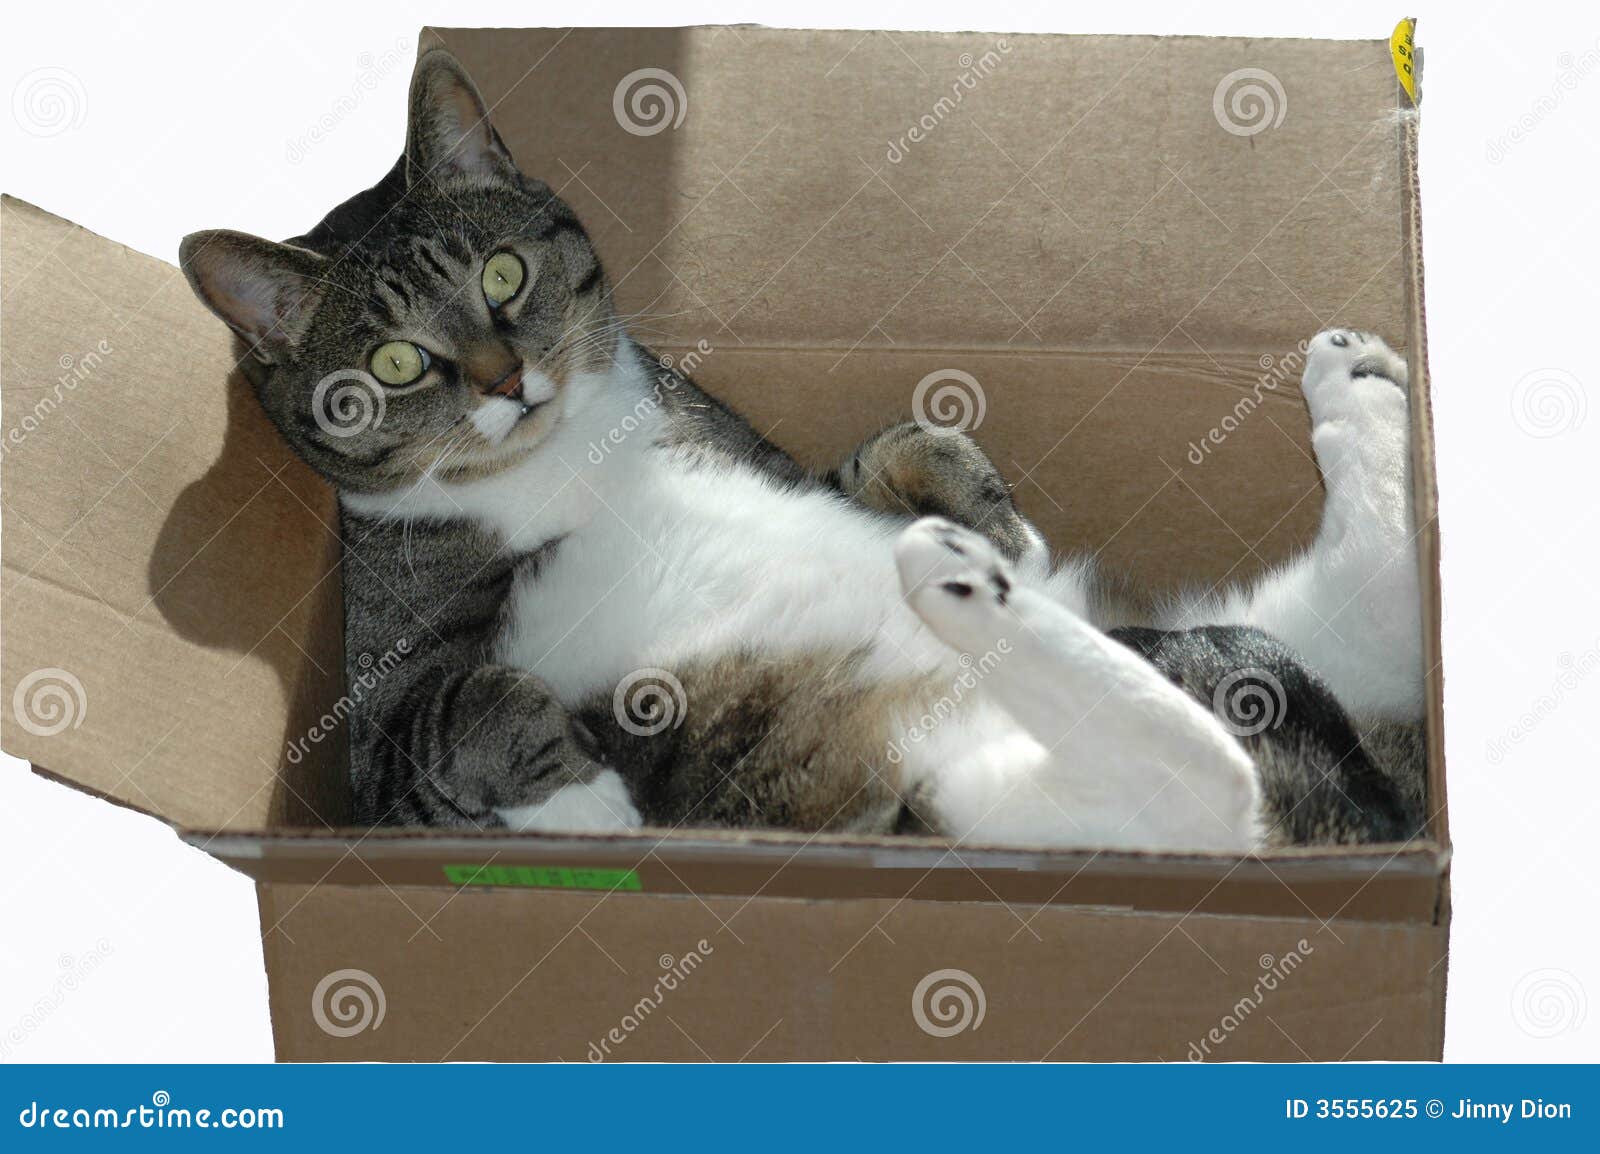 cat in a cardboard box